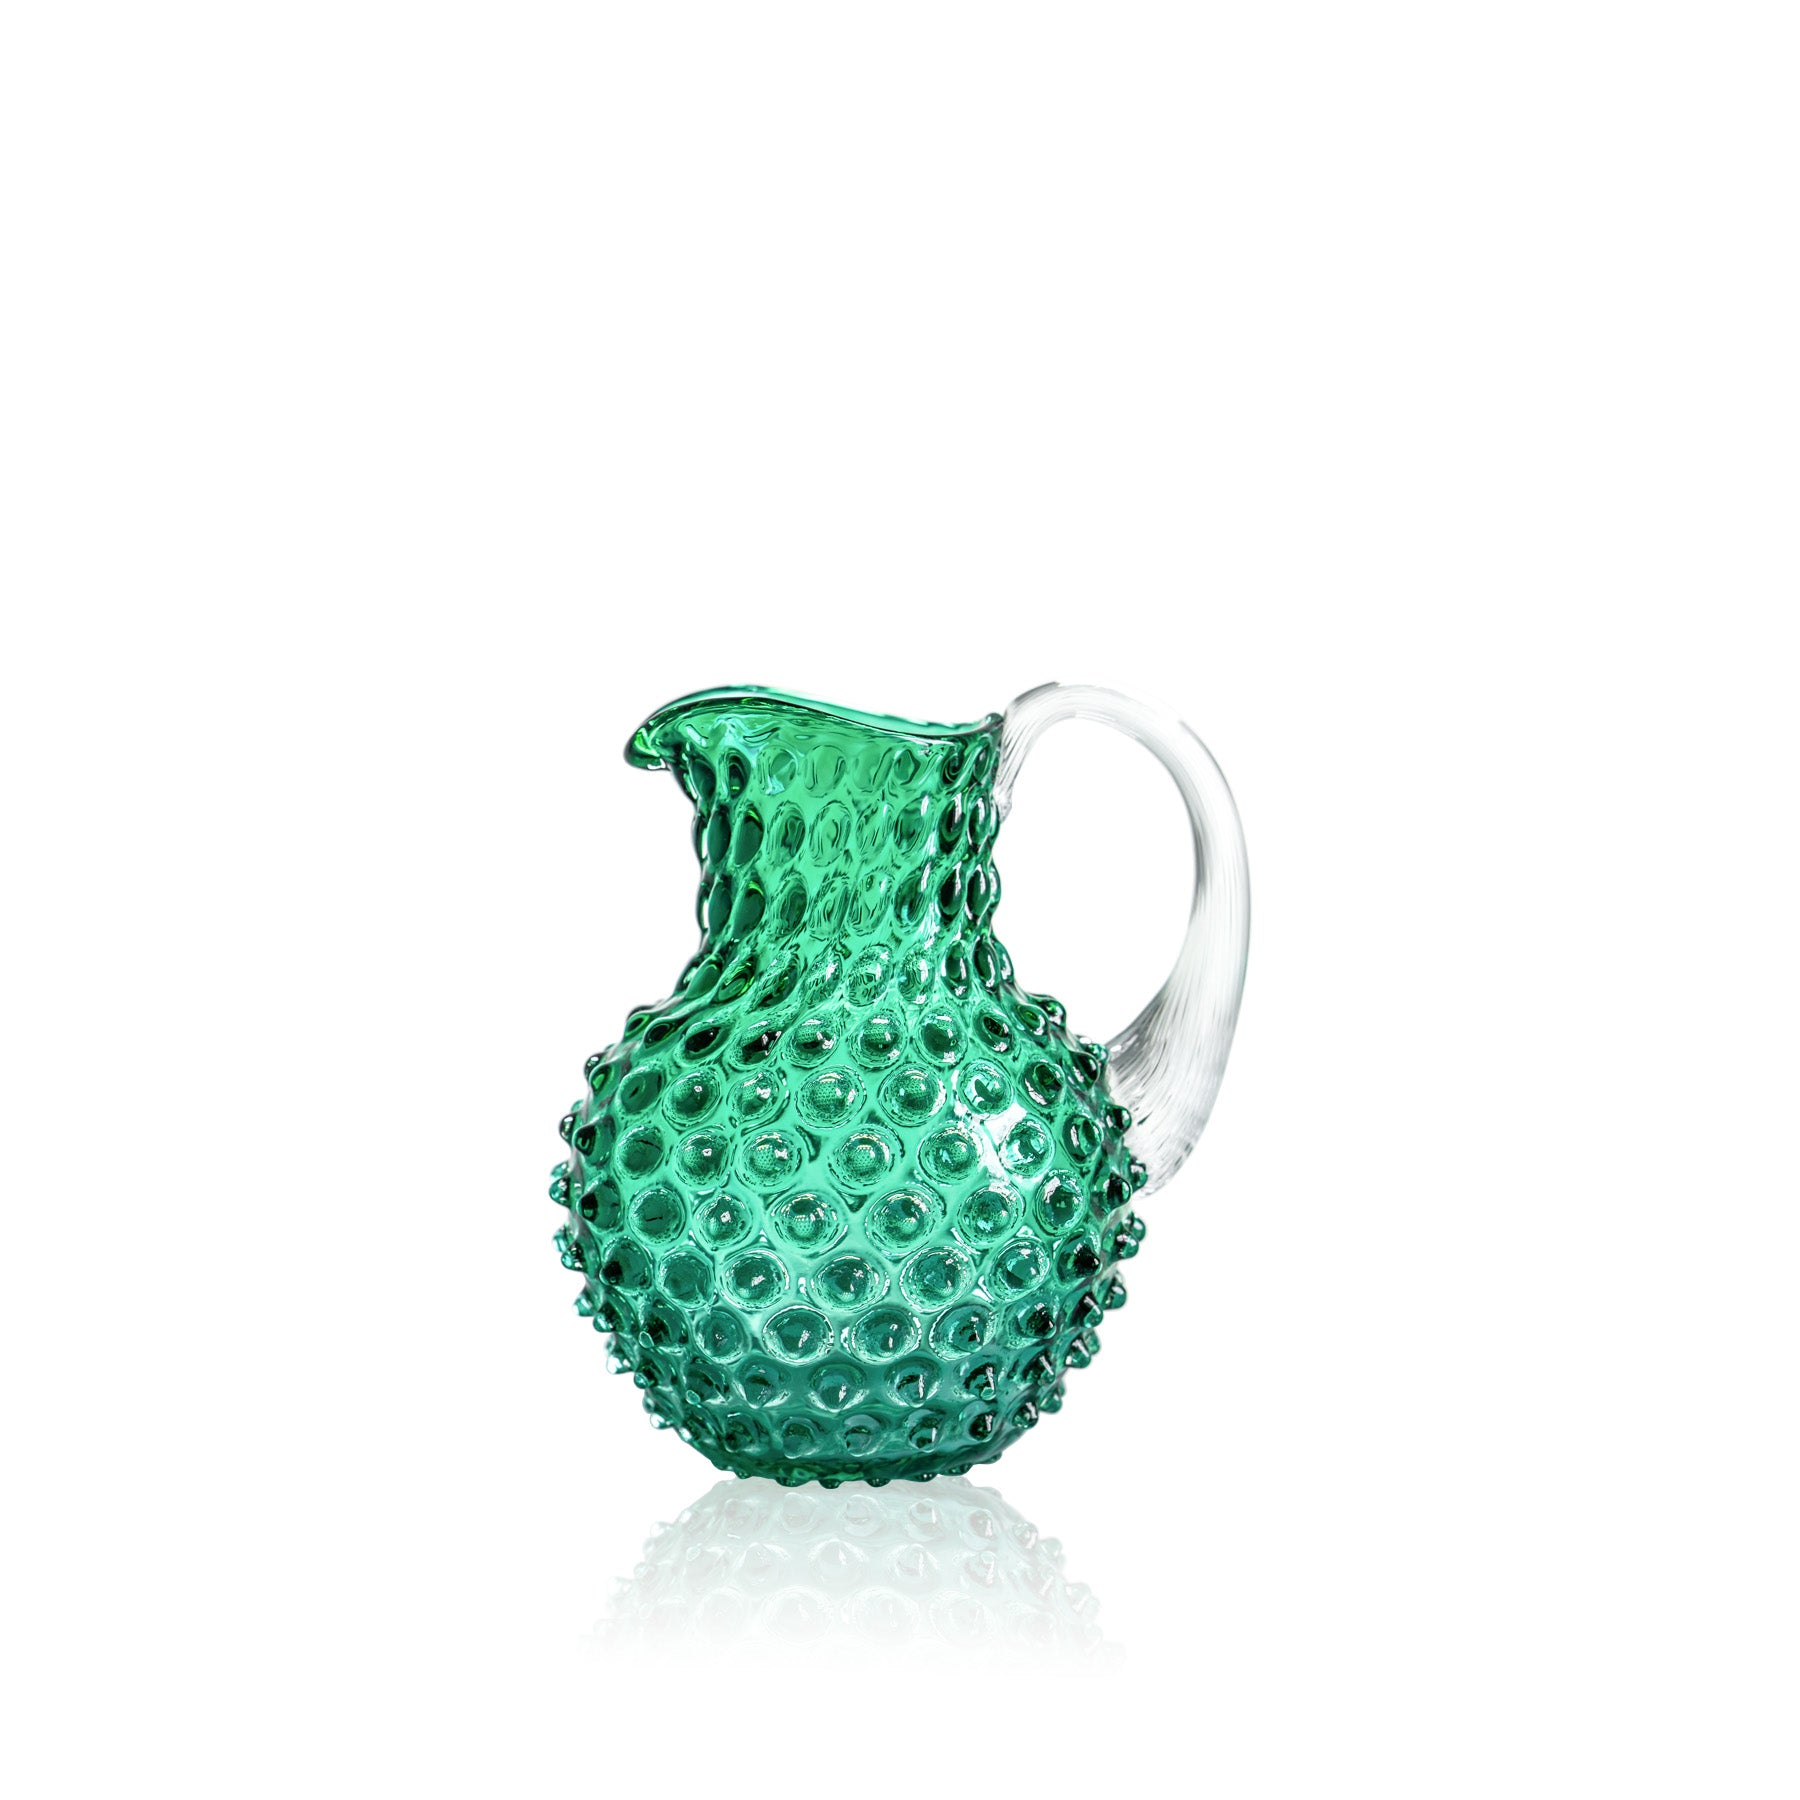 Small underlay dark green hobnail jug